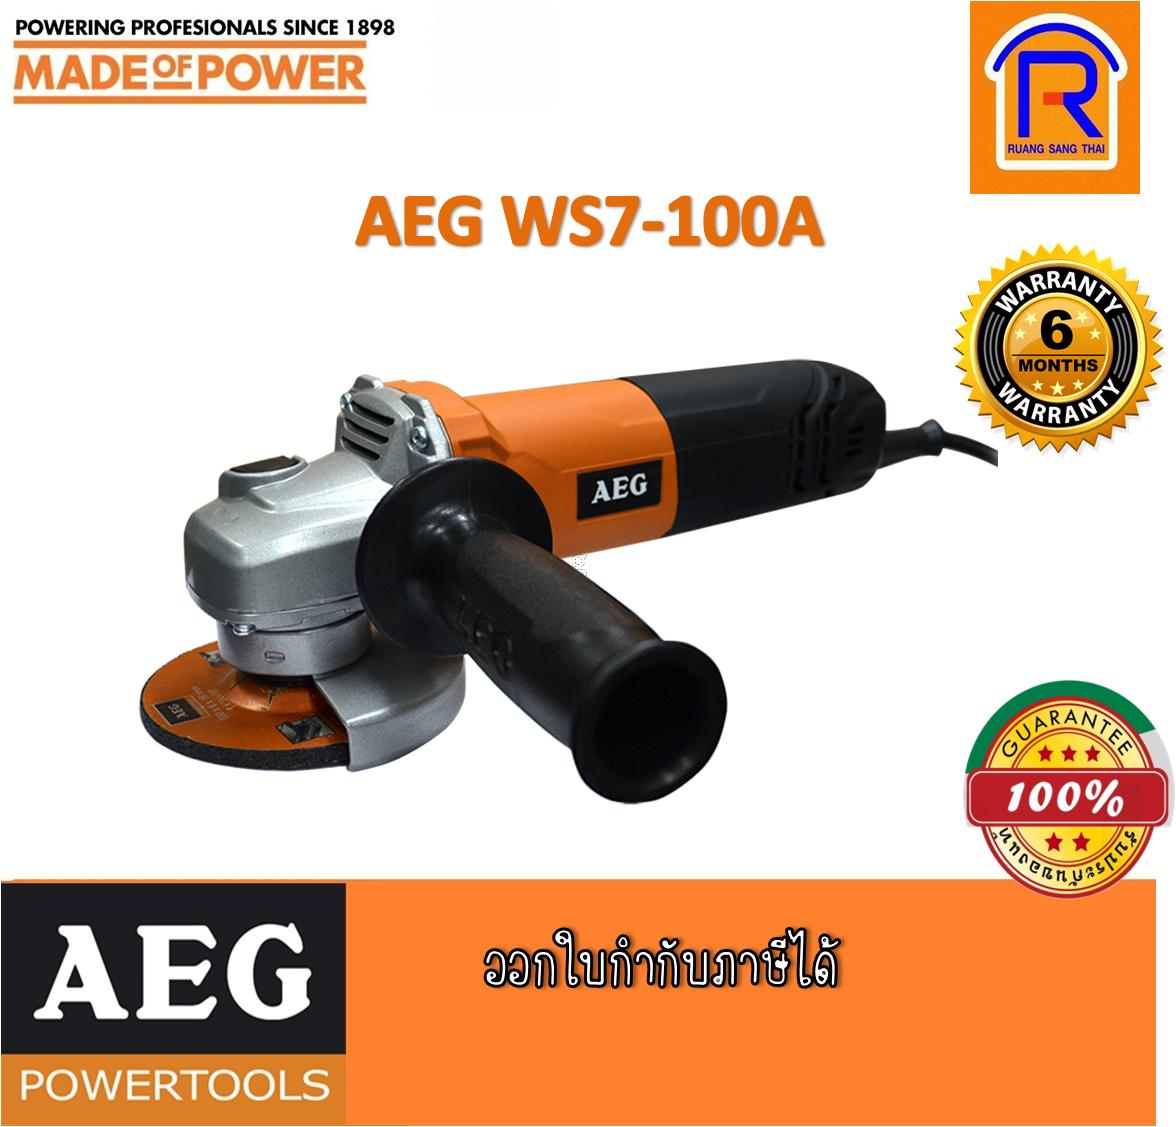 AEG WS7-100A